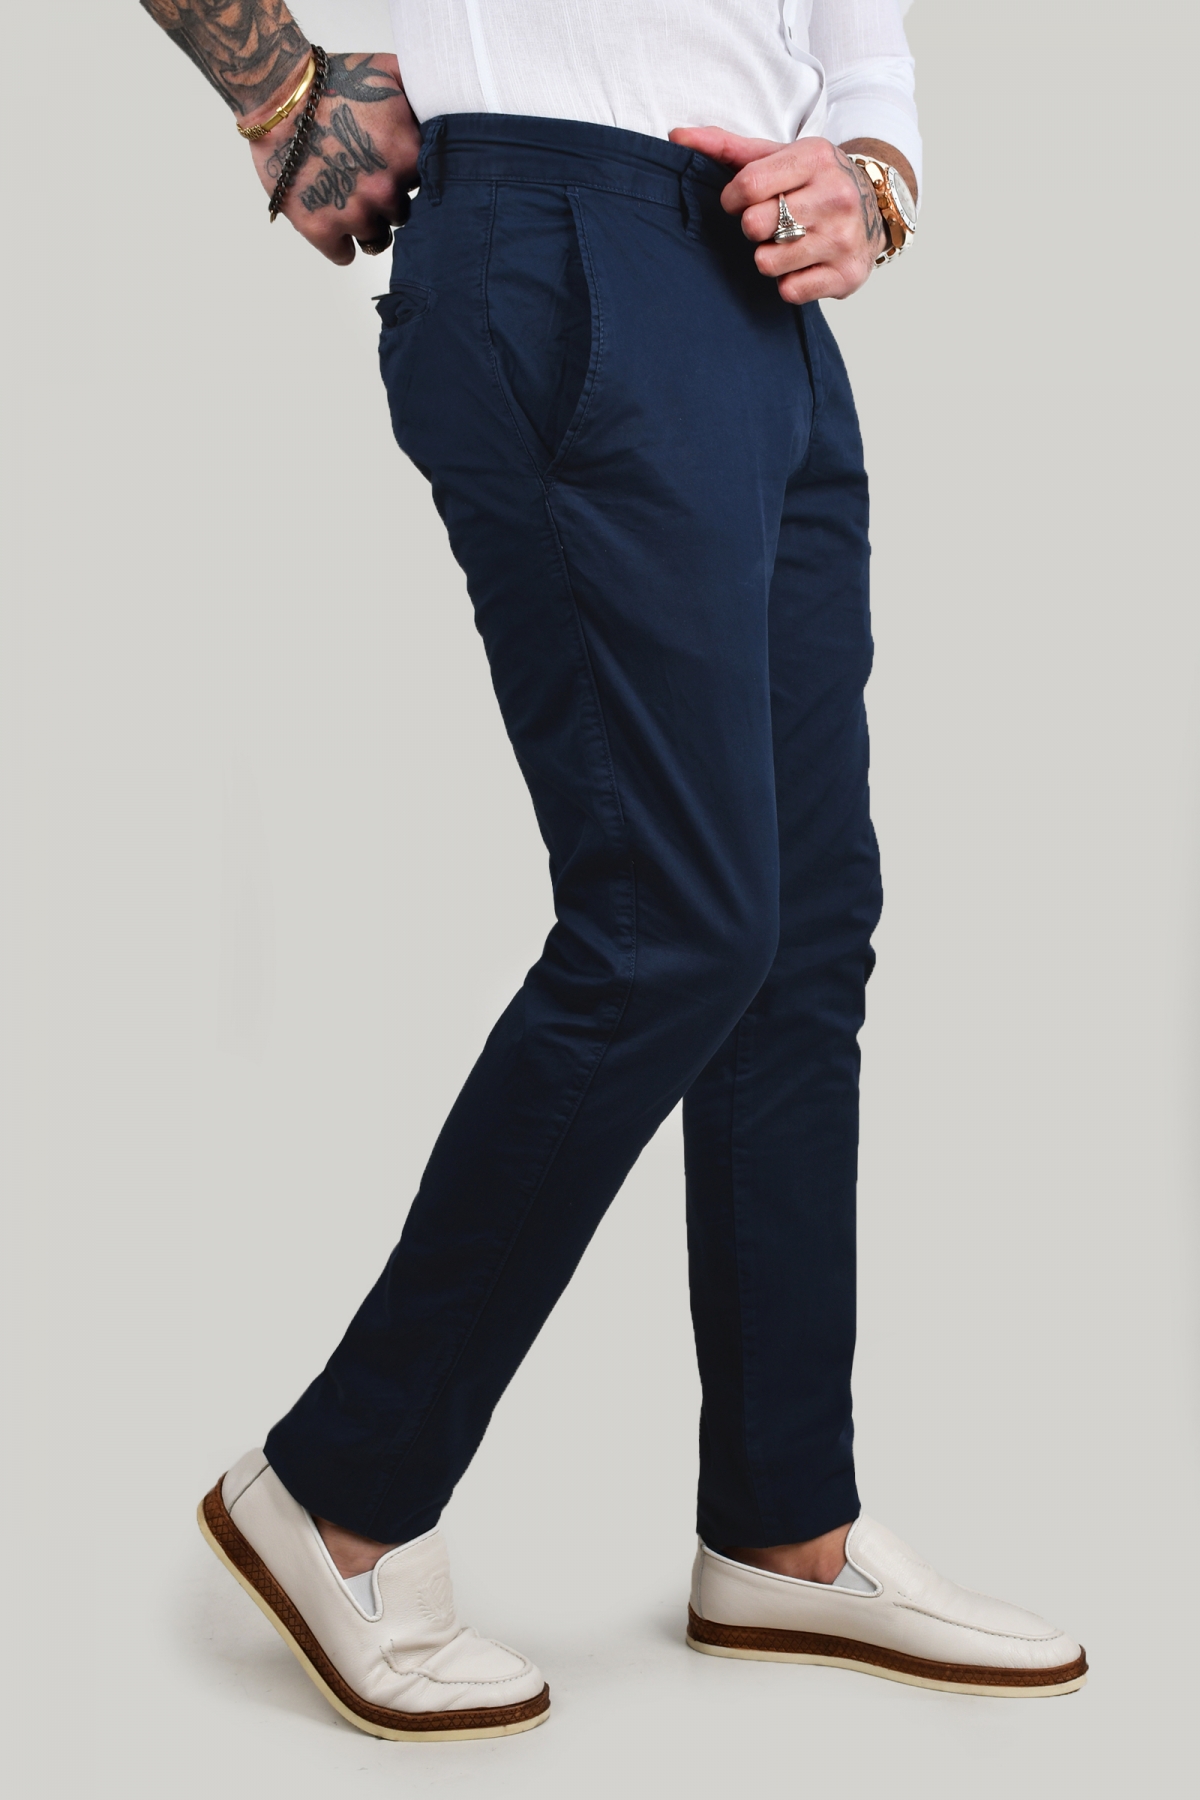 MEN FASHION Trousers Casual discount 66% Navy Blue 44                  EU Easy Wear Chino trouser 